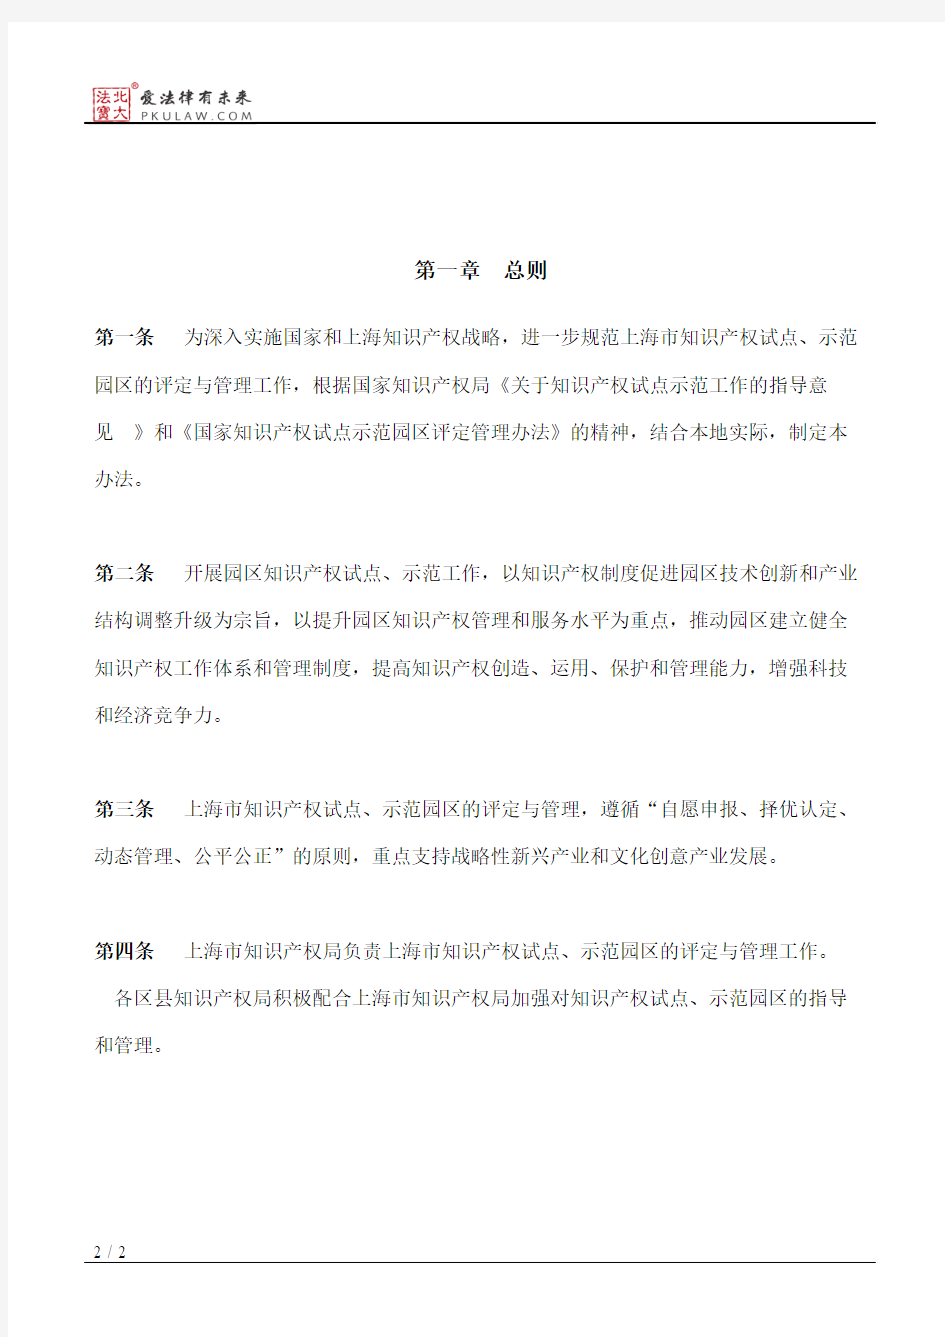 上海市知识产权局关于印发《上海市知识产权试点和示范园区评定与